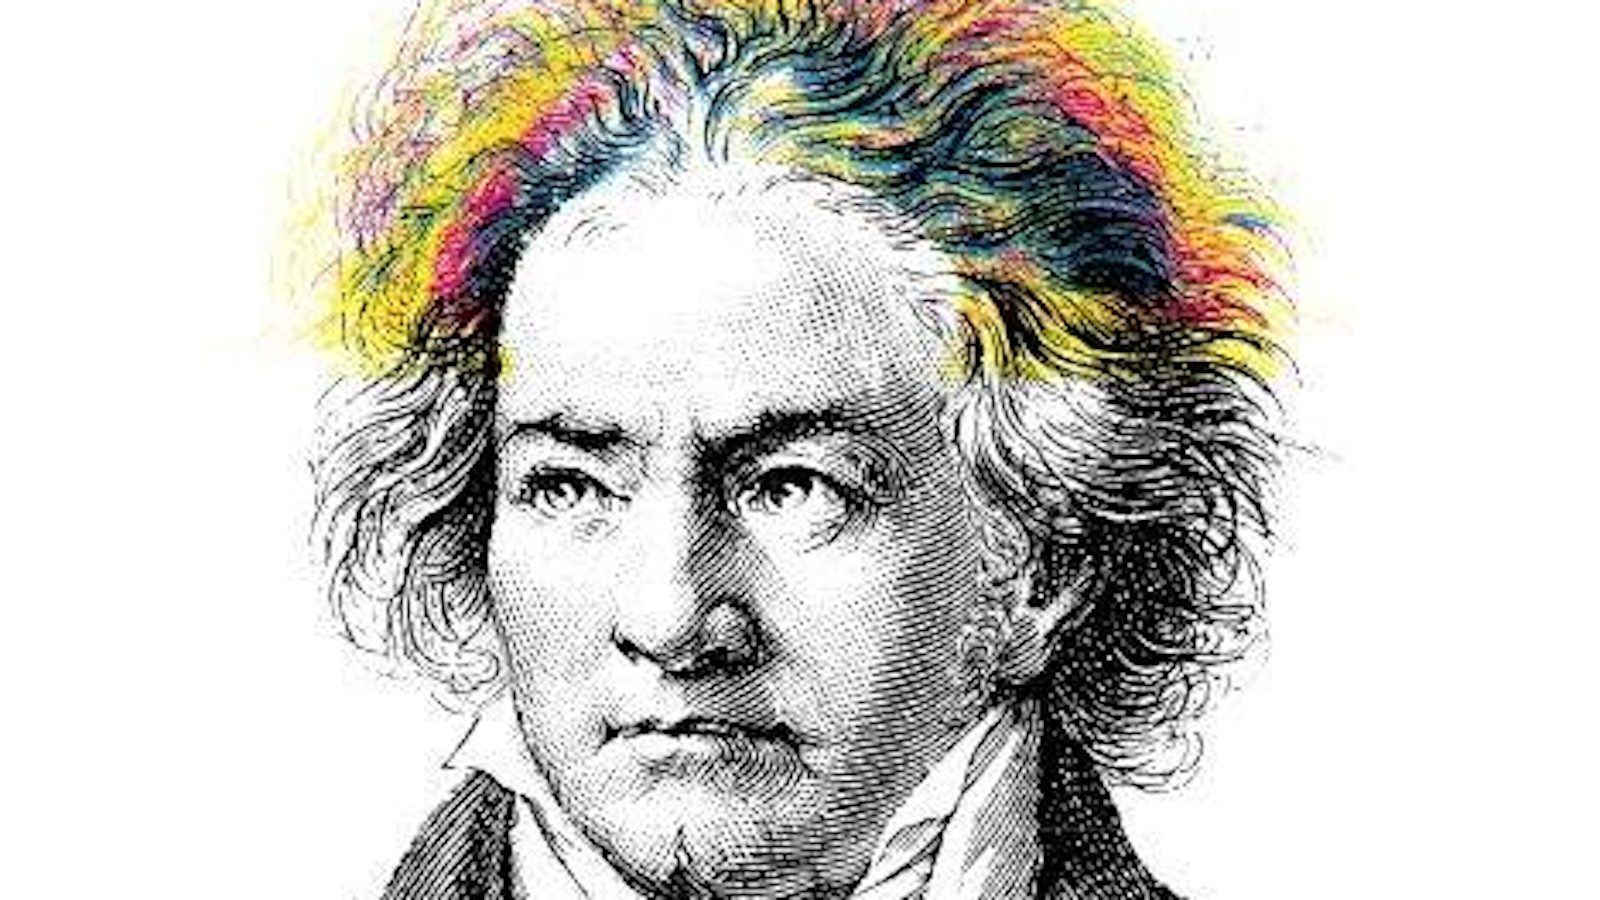 Kuvassa on piirroskuva Beethovenista, jonka hiuksissa on muutamia väriraitoja.